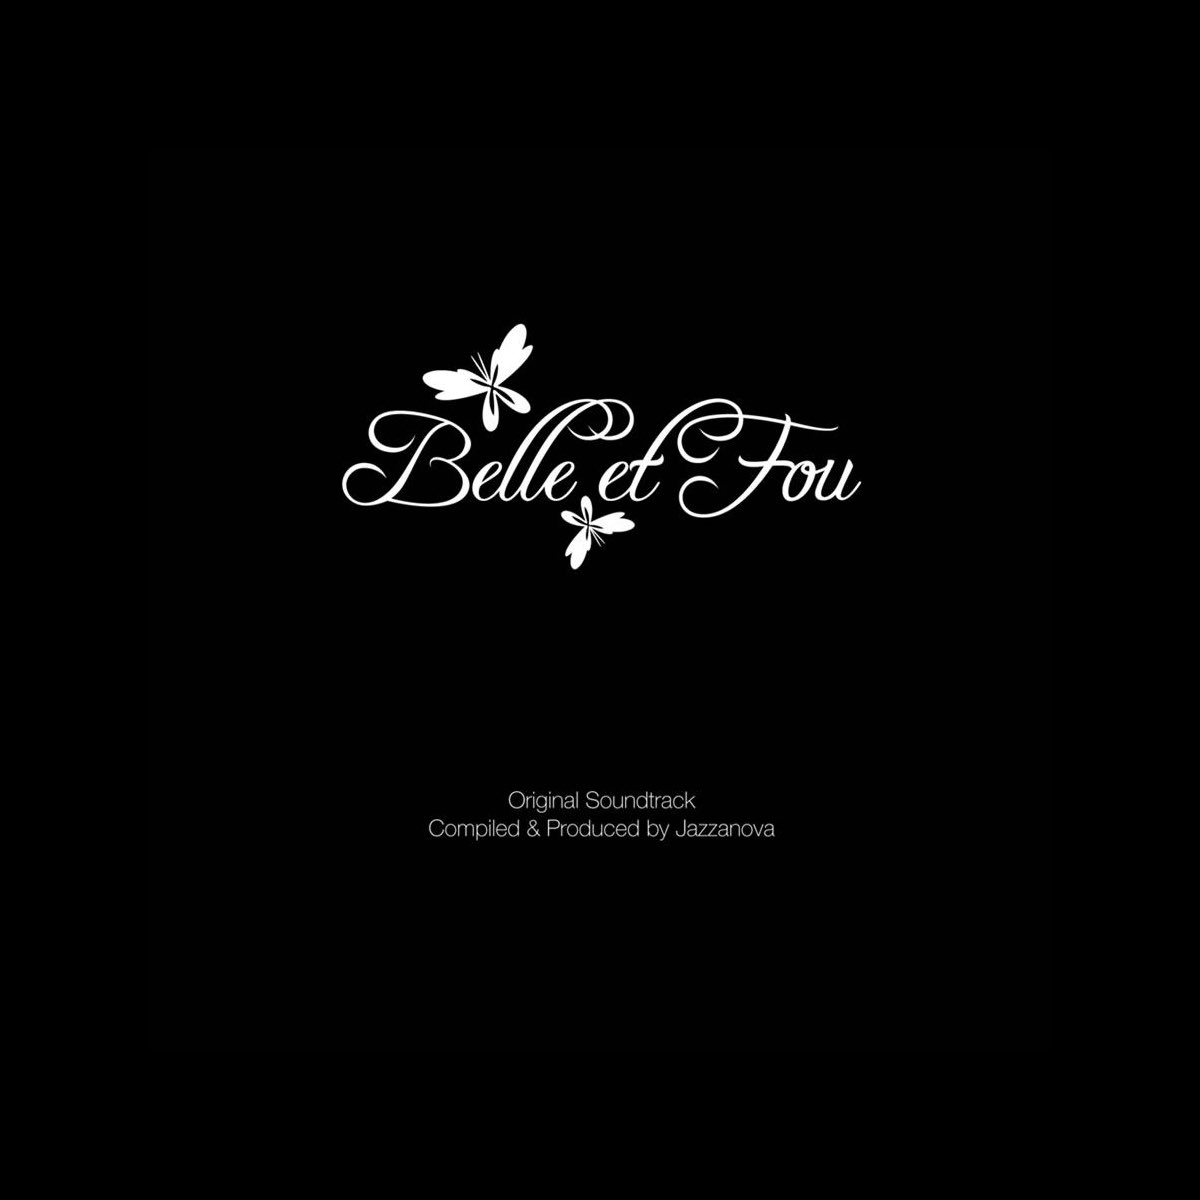 ‎Belle et Fou (Original Soundtrack) by Jazzanova on Apple Music